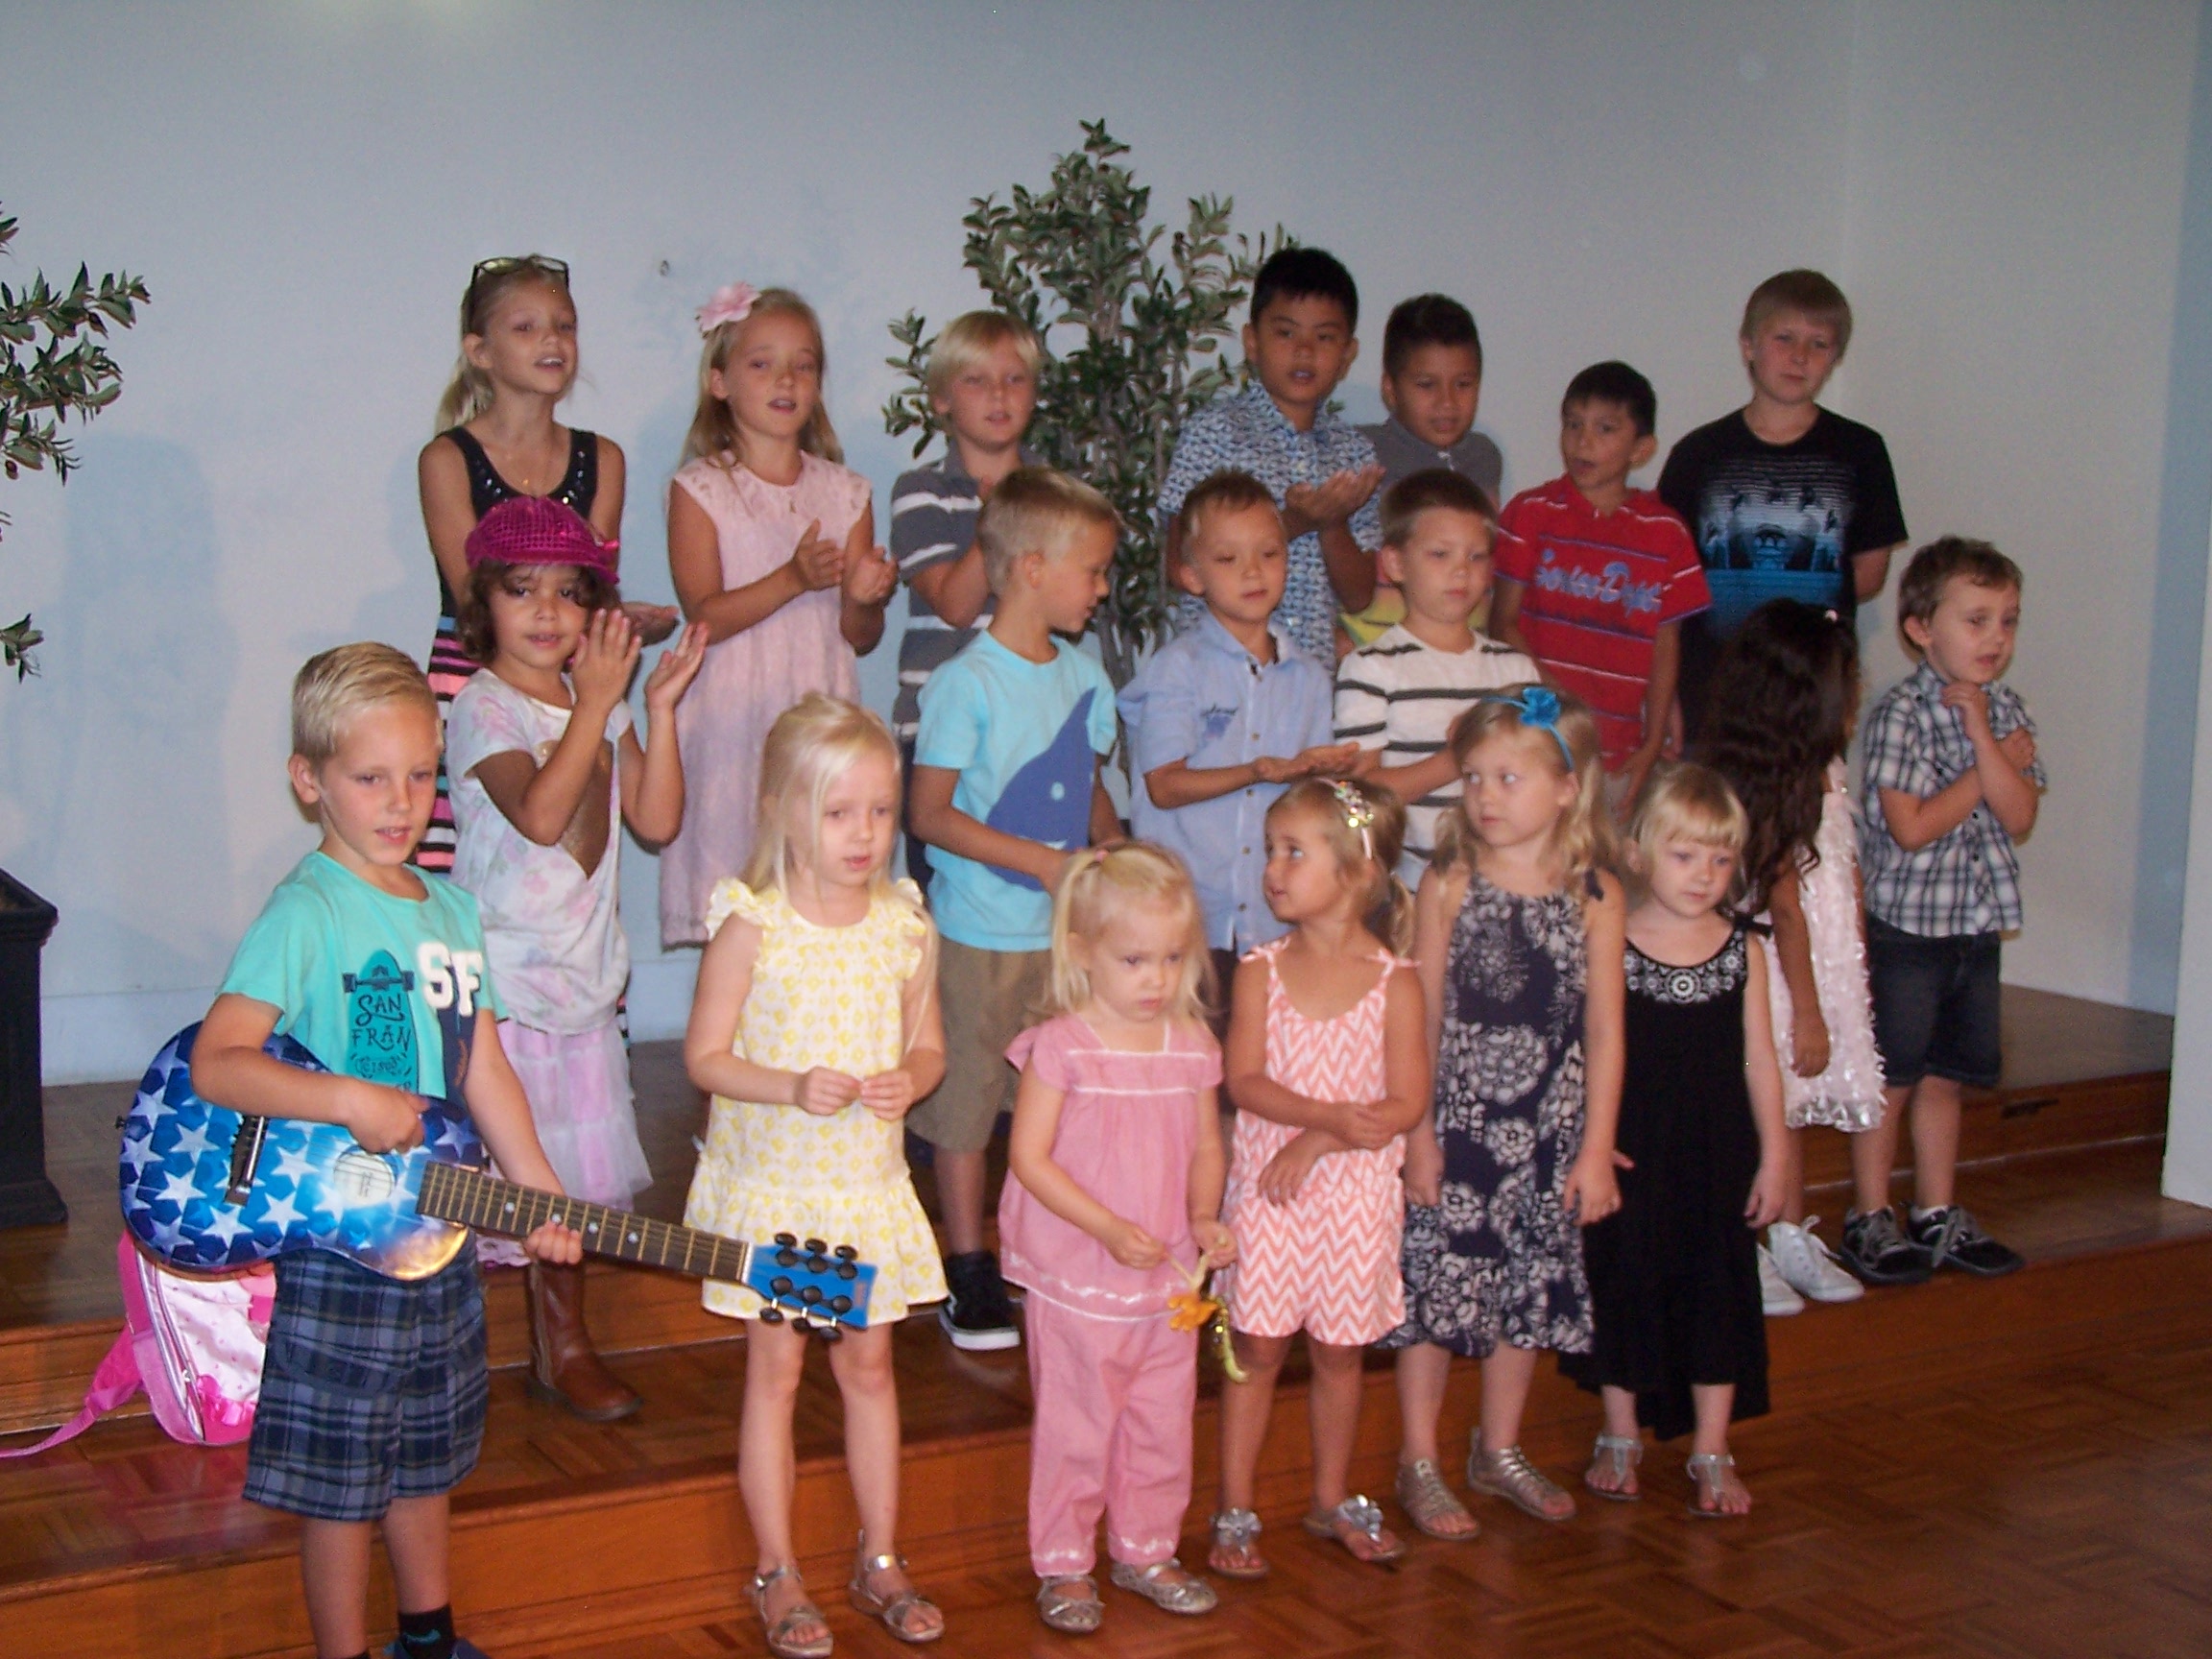 Kotikirkko - Finnish Pentecoastal Church - on nykyisin myös lasten kirkko, jonne eri kansallisuuksia edustavat perheen pienimmät voivat kerääntyä erilaisten harrastusten pariin.